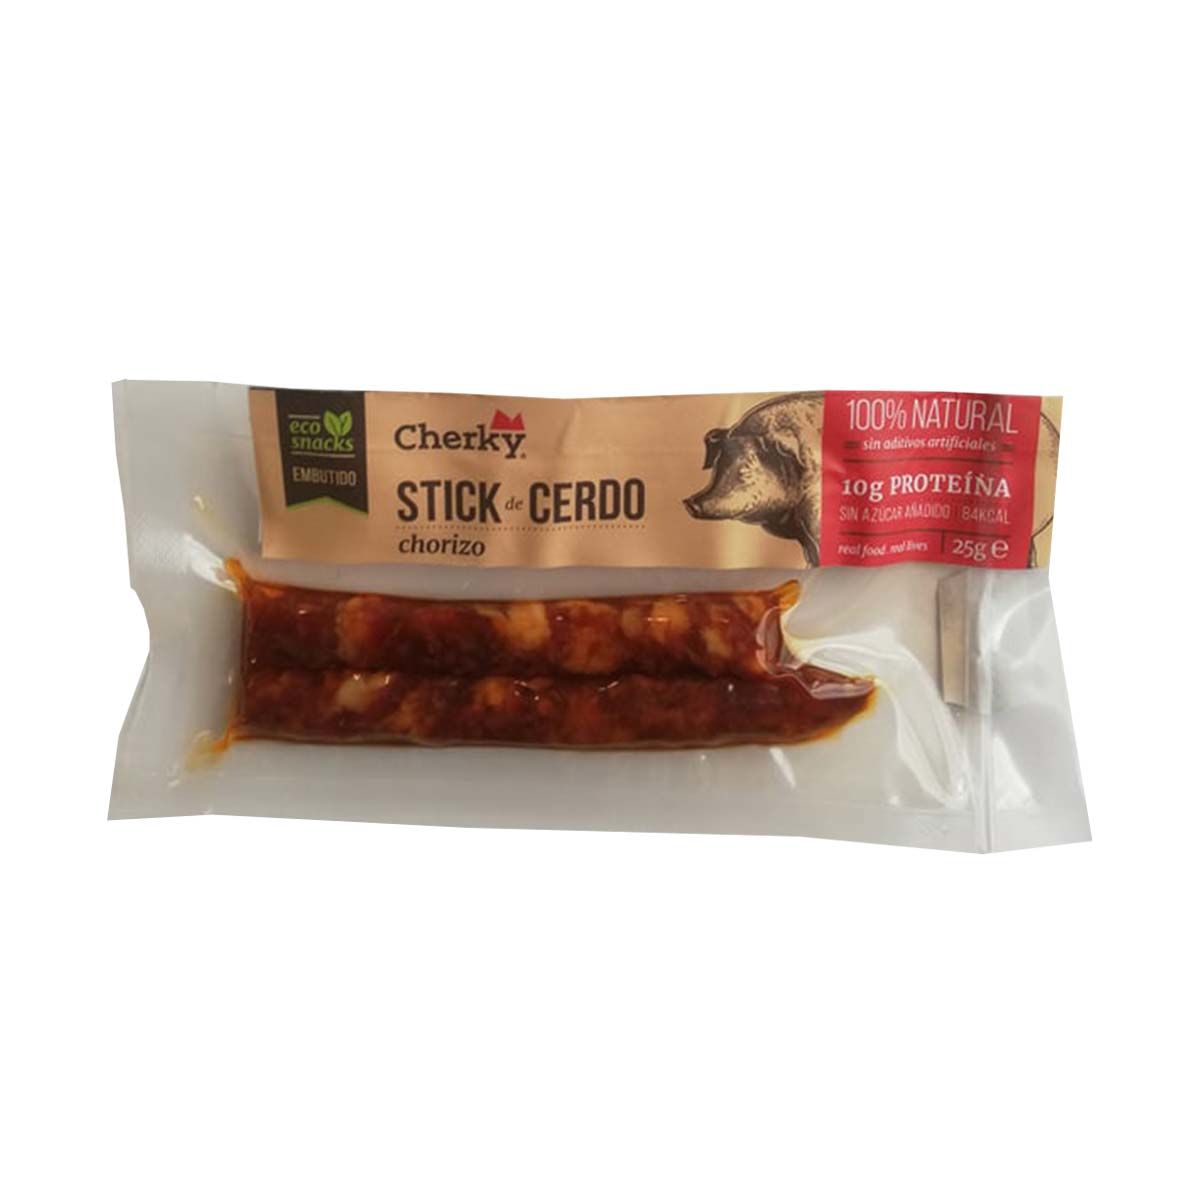 Stick de cerdo ecológico - Chorizo - 25 g